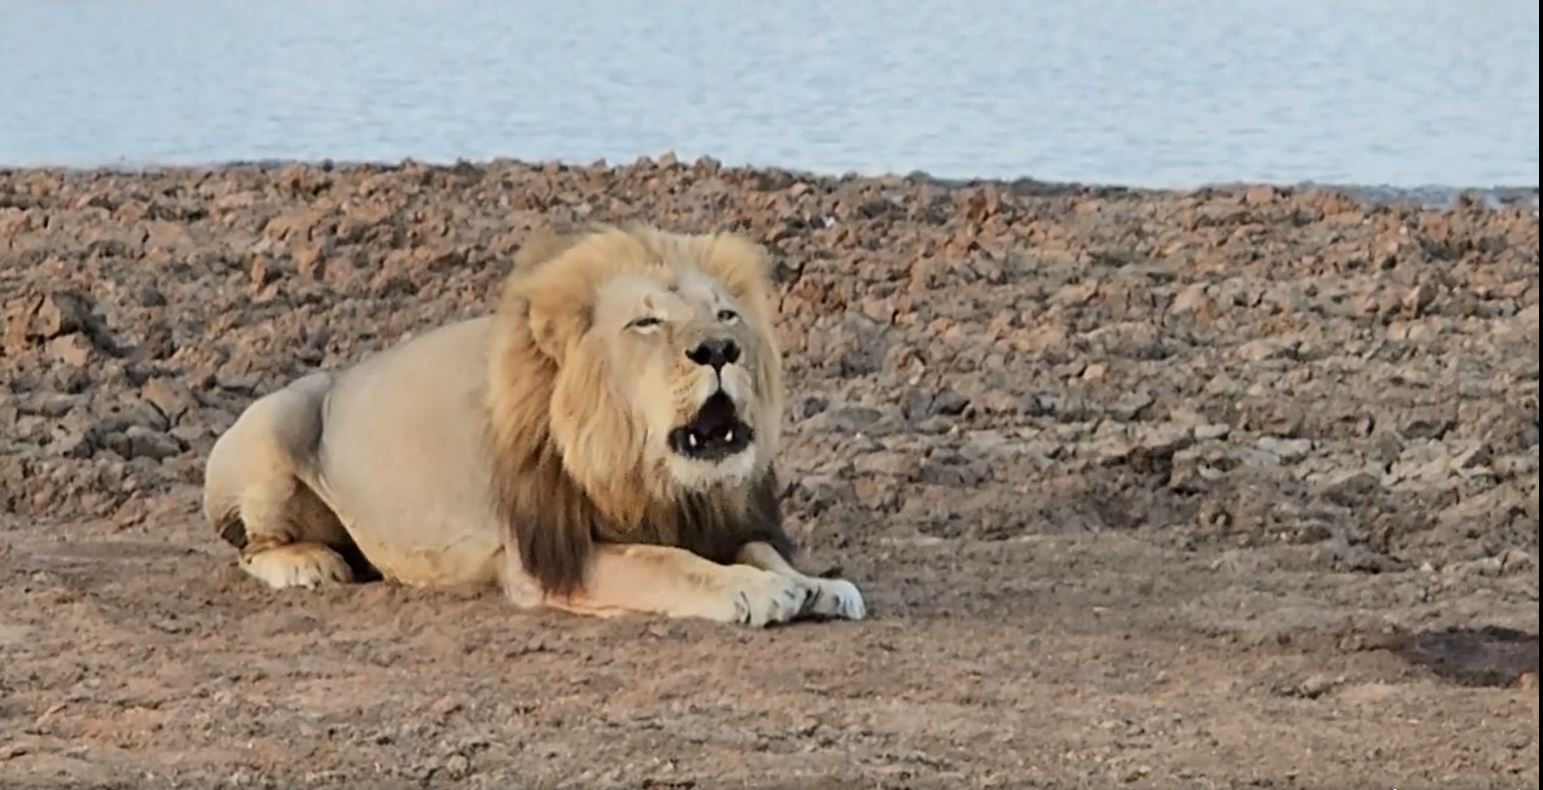 Wir sitzen gerade in nur 10 Metern Abstand zu diesem Löwenmann, der seine Herrschaft bekannt gibt. Fotoreise durch die Wildnis Südafrikas.